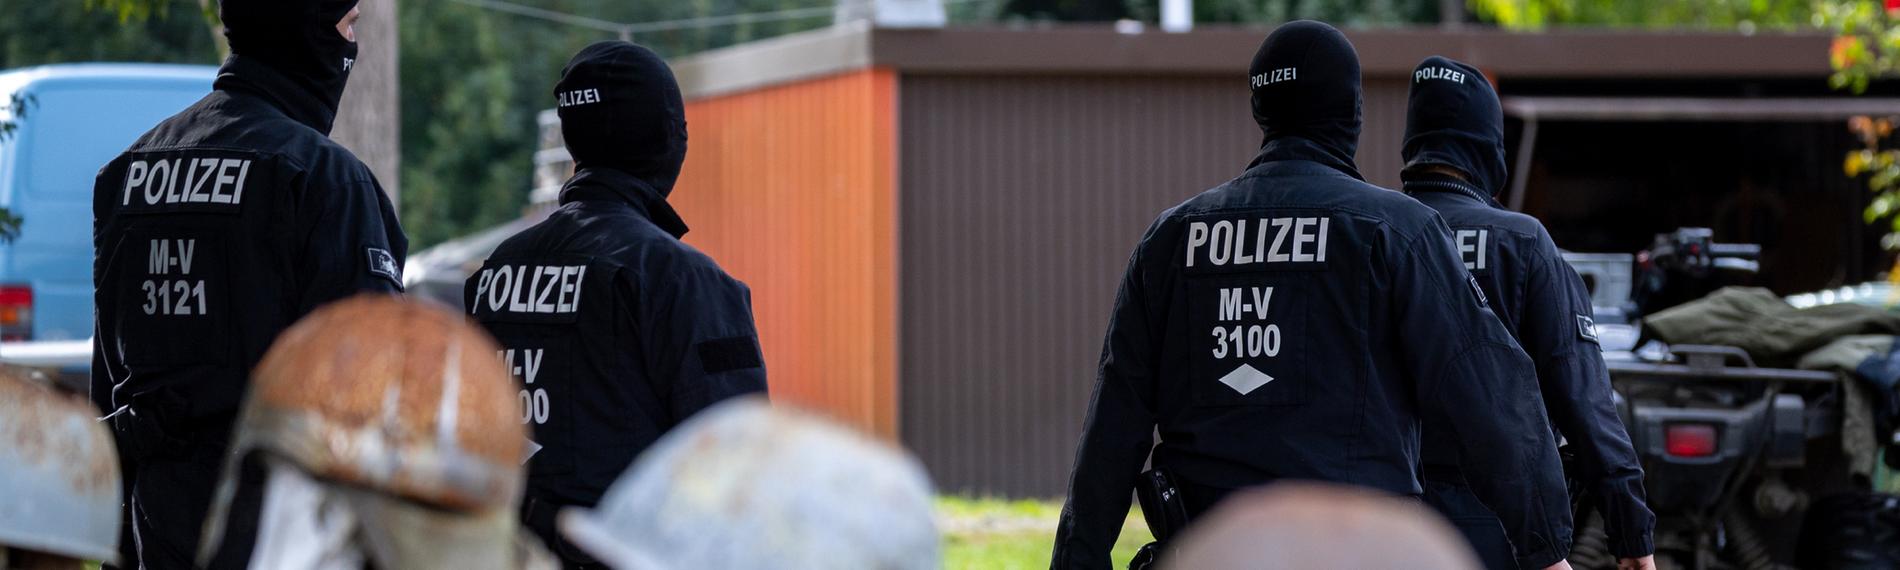 Polizisten gehen zur Sicherung von Beweismittel zum Haus des bundesweit bekannter Rechtsextremist Krüger auf dessen Gartenzaun rostige Stahlhelme hängen. (19.09.2023)